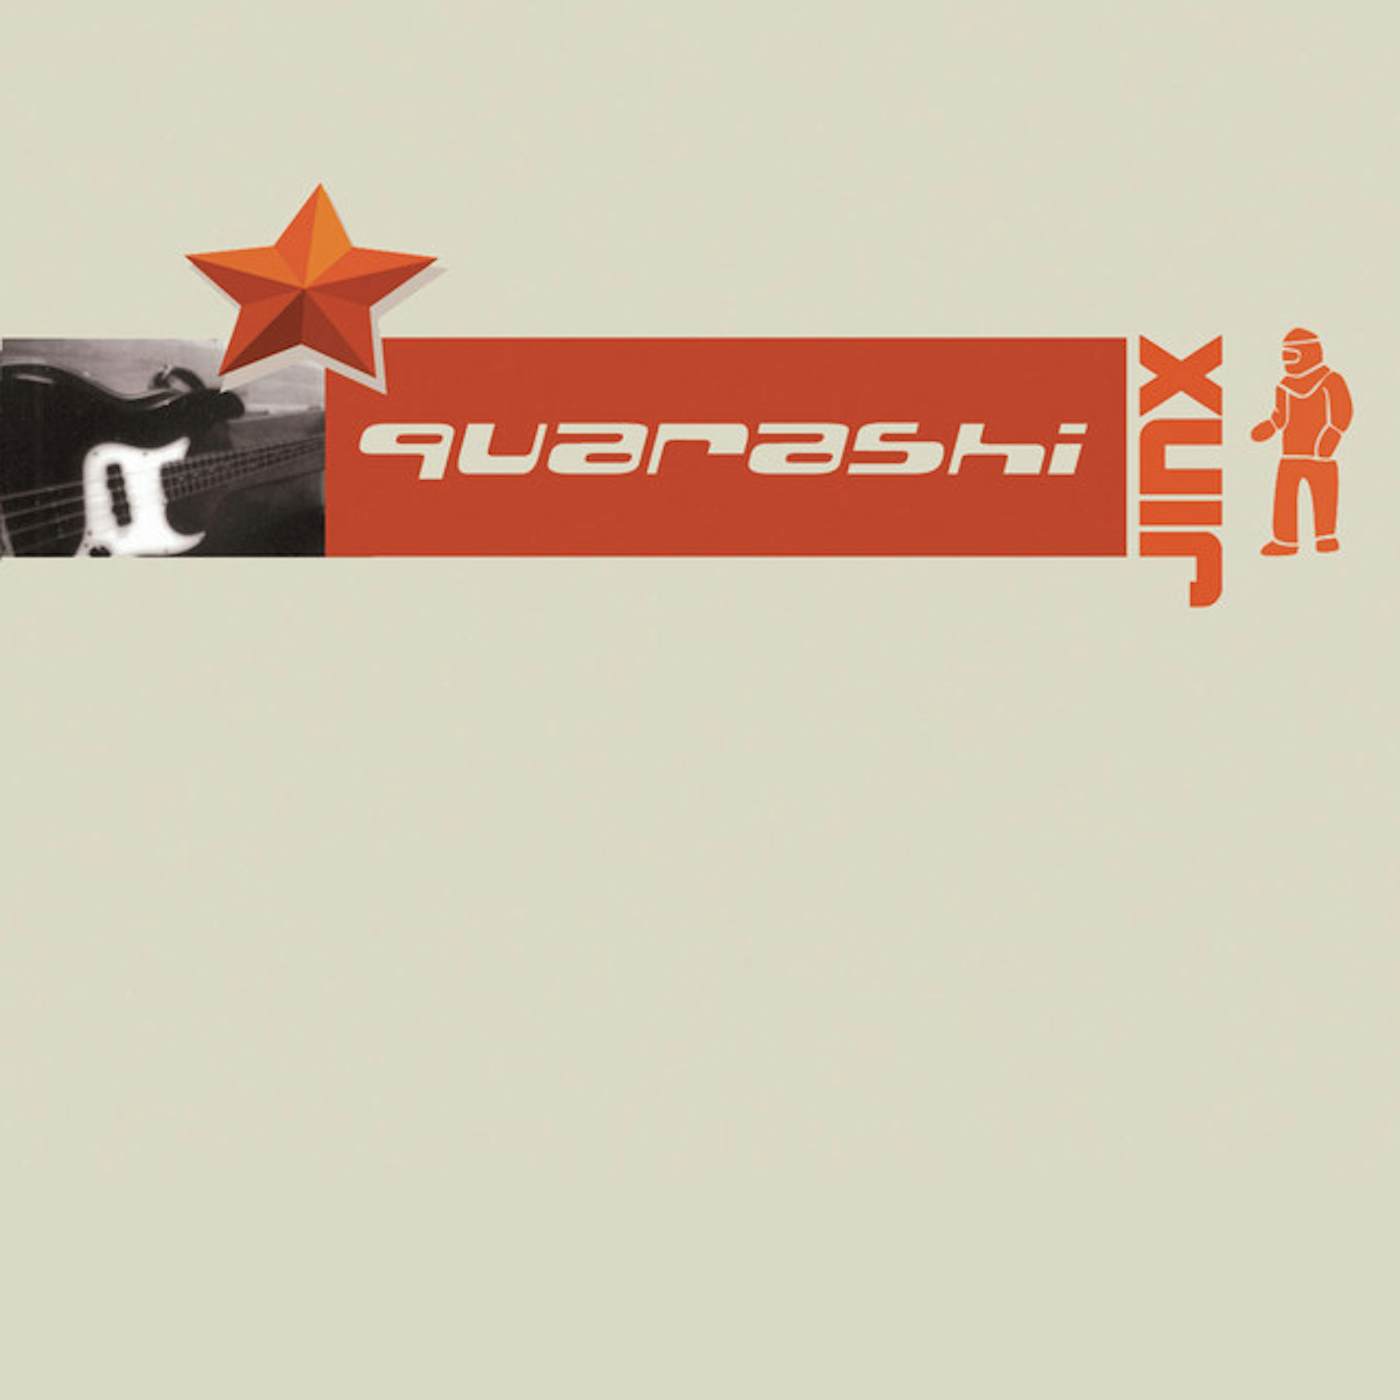 Quarashi JINX CD